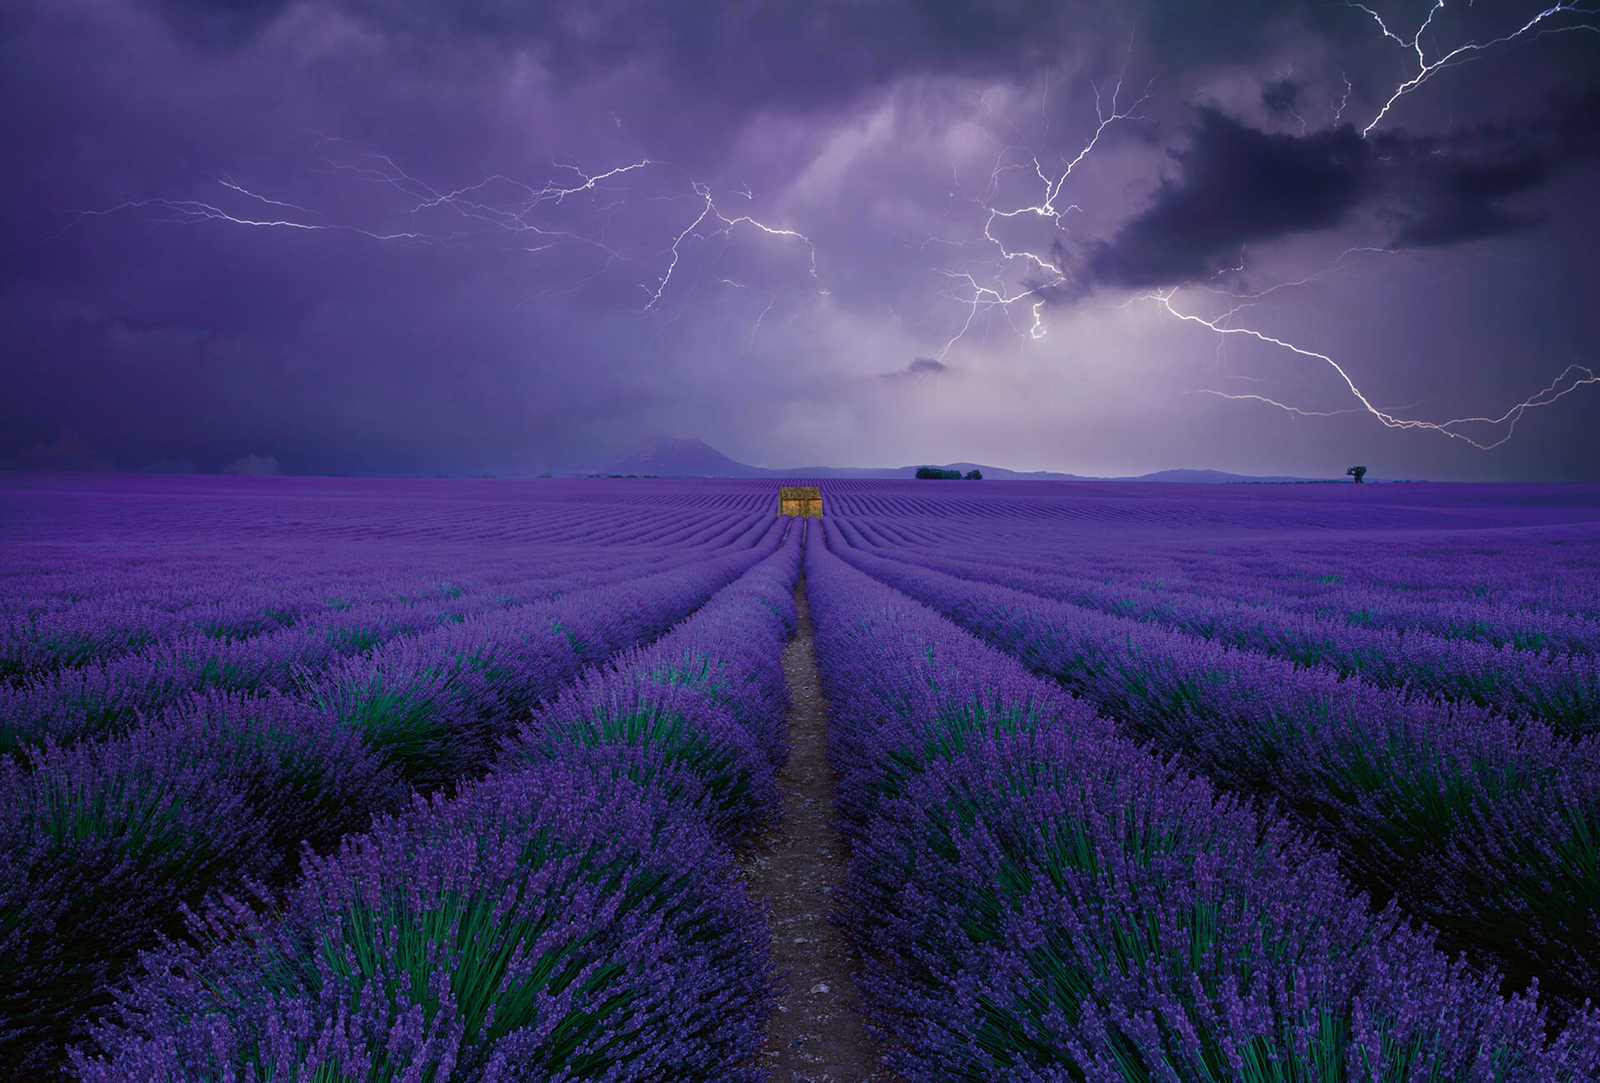         Fototapete Lavendel Feld – Violett, Grün, Braun
    